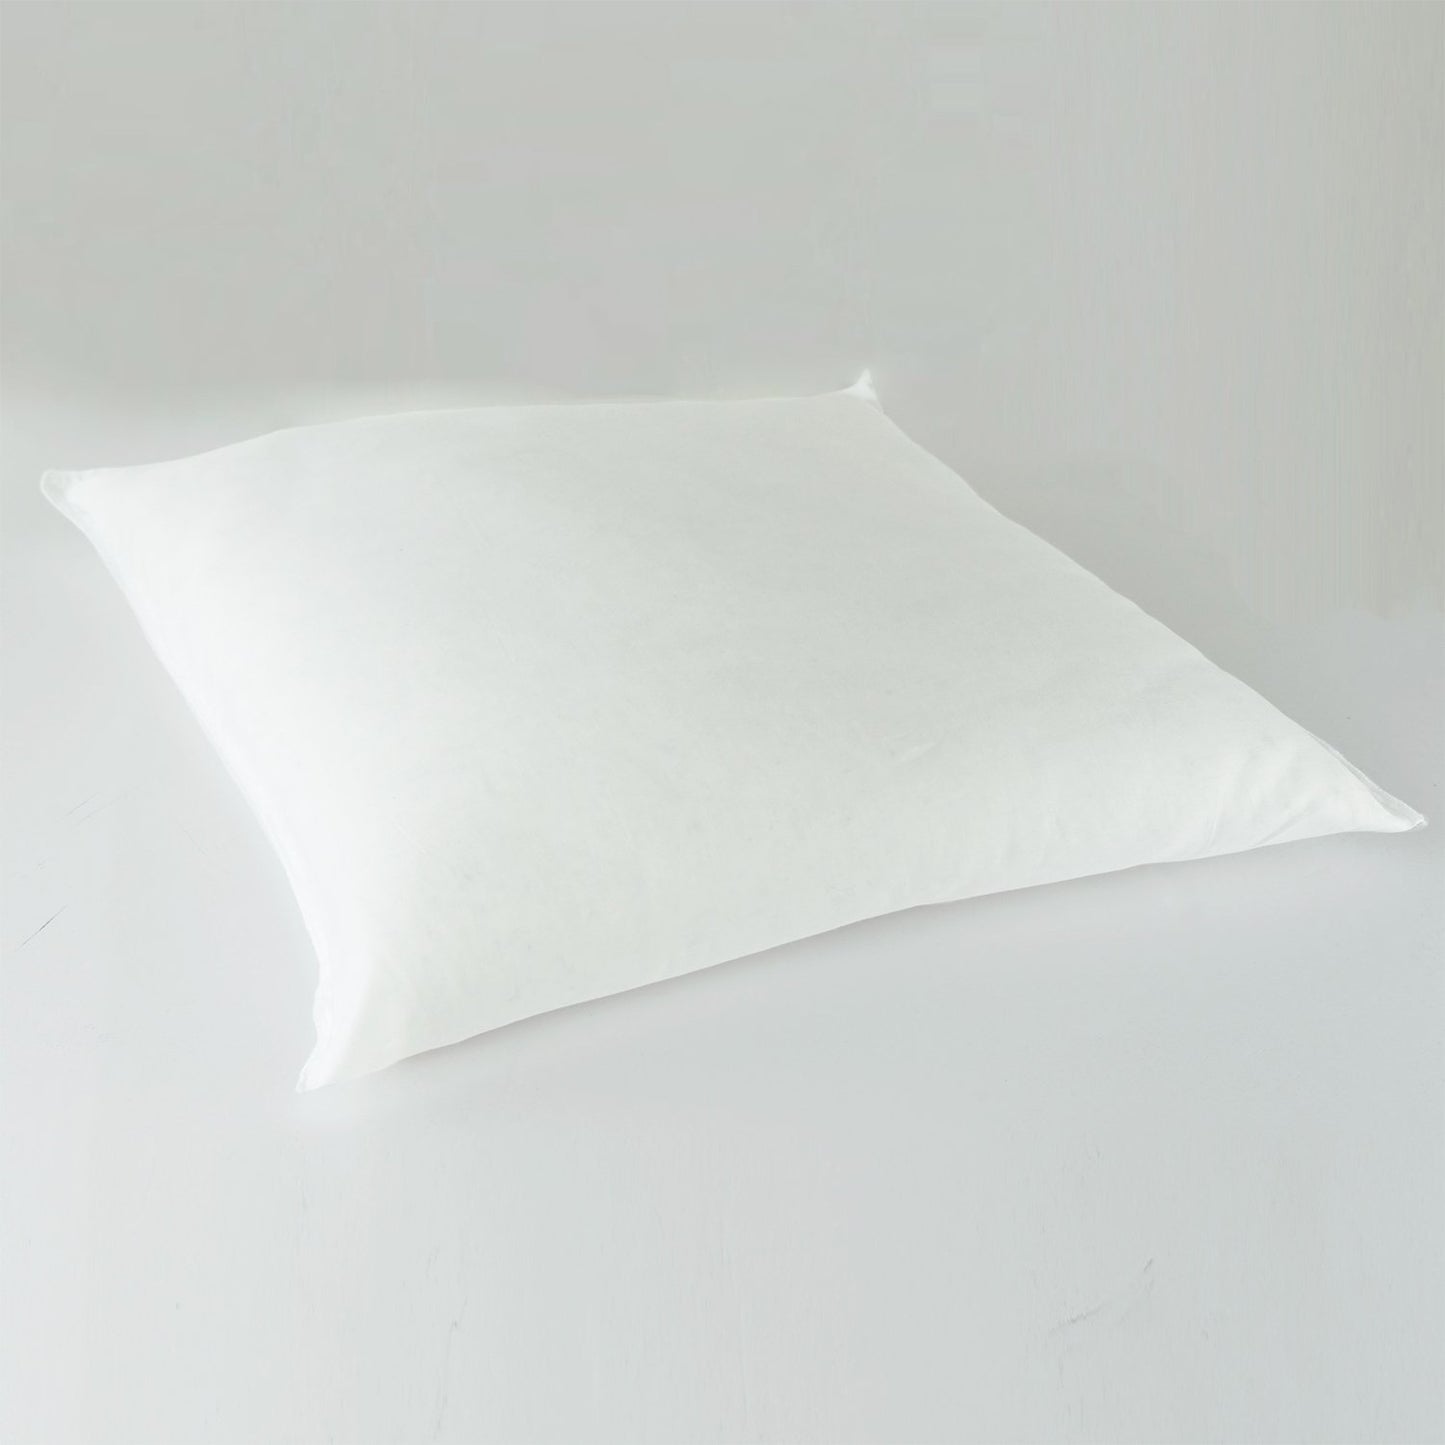 J-Life Espresso Zabuton Floor Pillow_Pillows & Shams_Zabuton Floor Pillows_100% Cotton_Reversible_Handmade